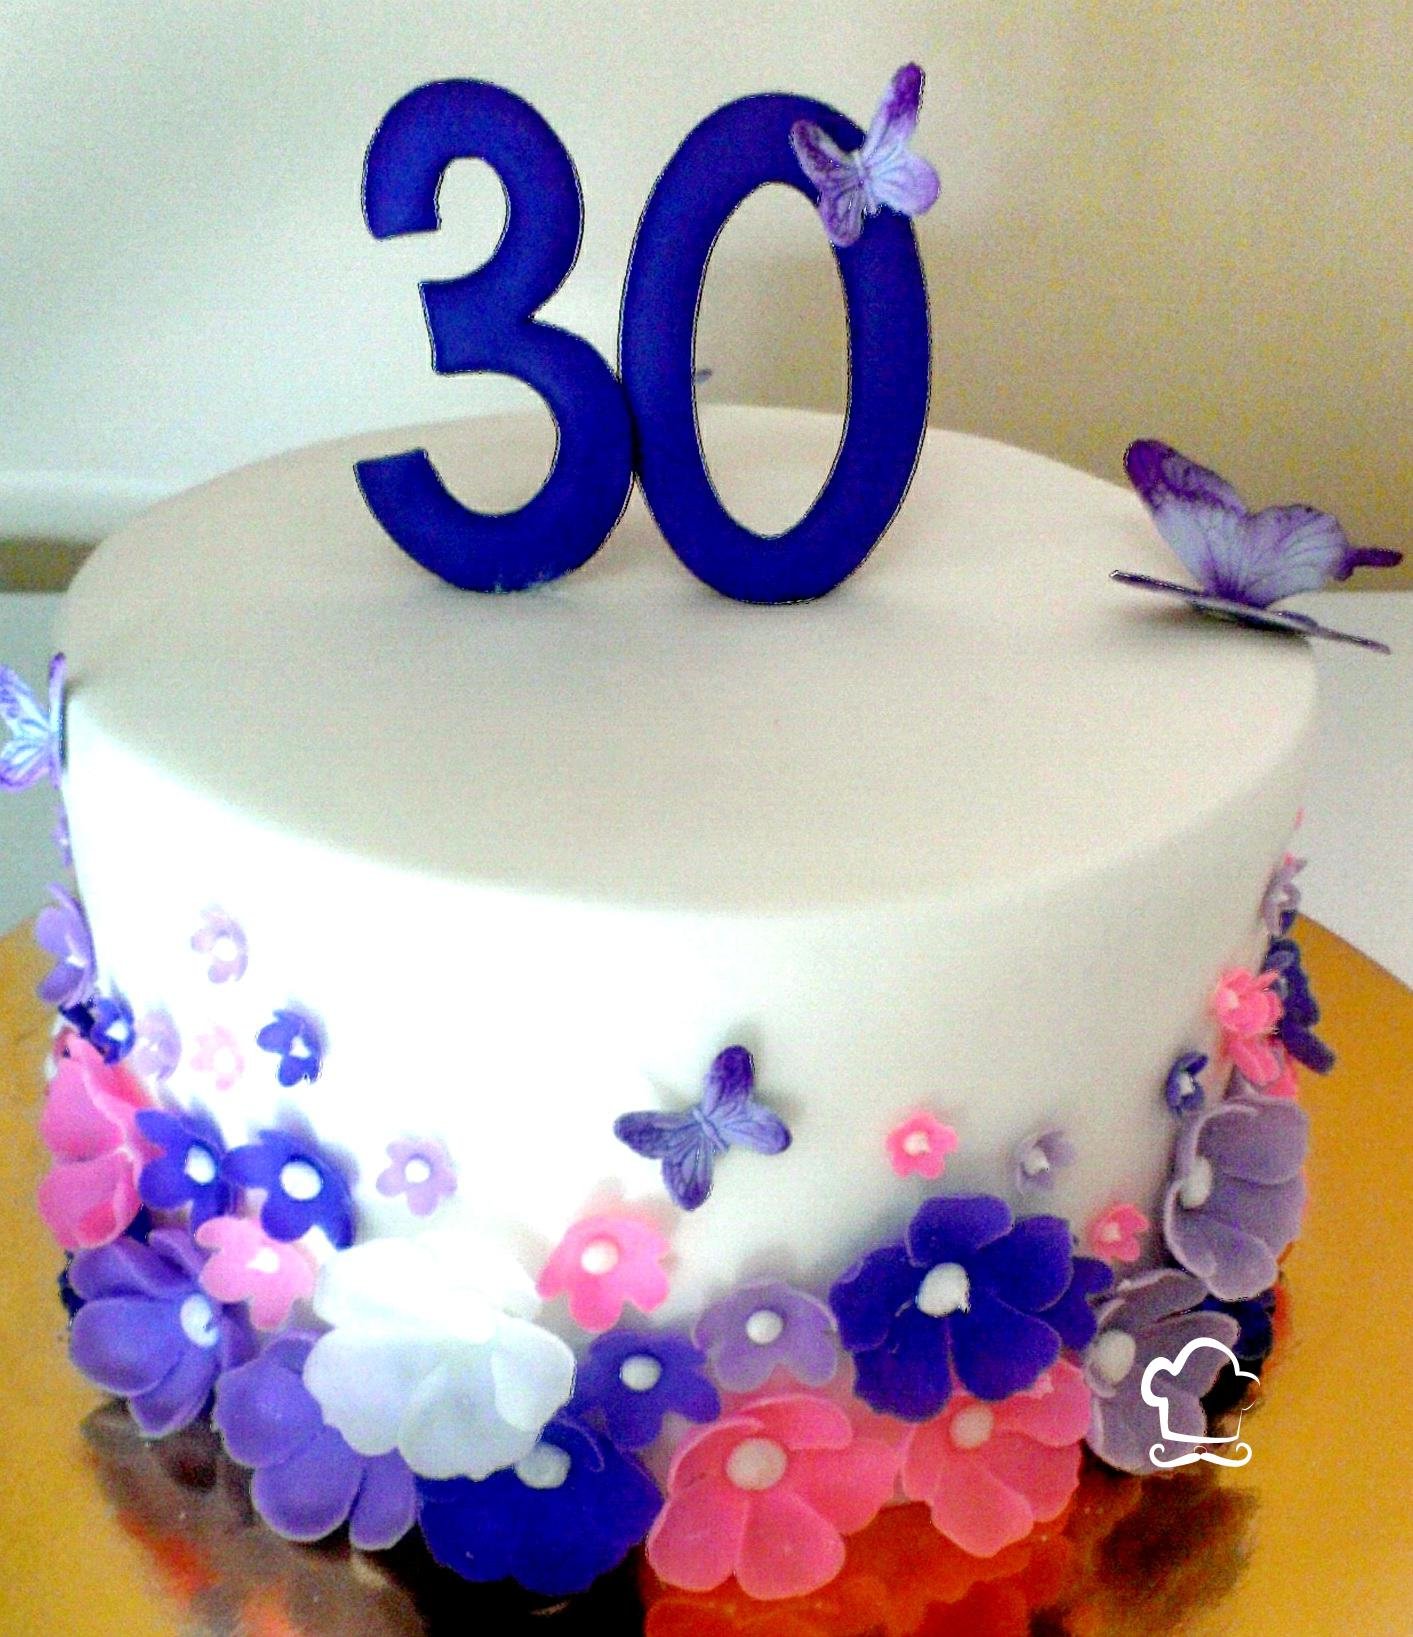 Поздравляю 30 лет девушке. Красивый торт на день рождения 30 лет. Торт на день рождения 30 лет девушке. Торт 30 лет девушке красивый на день рождения. Украшение торта на юбилей 30 лет девушке.